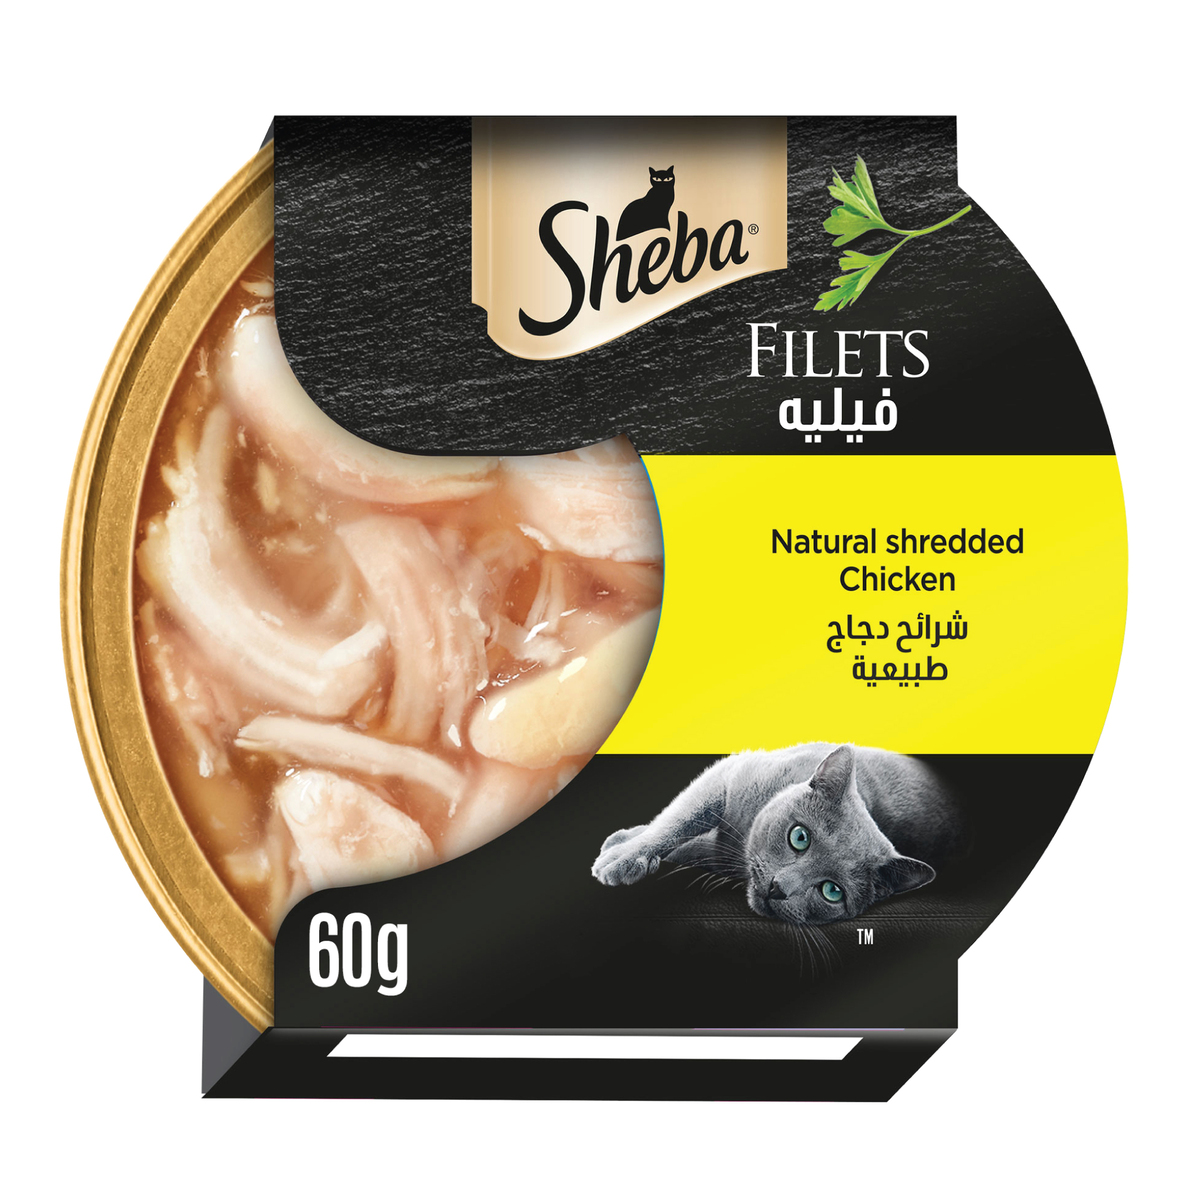 Sheba Fillets Shredded Chicken Cat Food 60 g